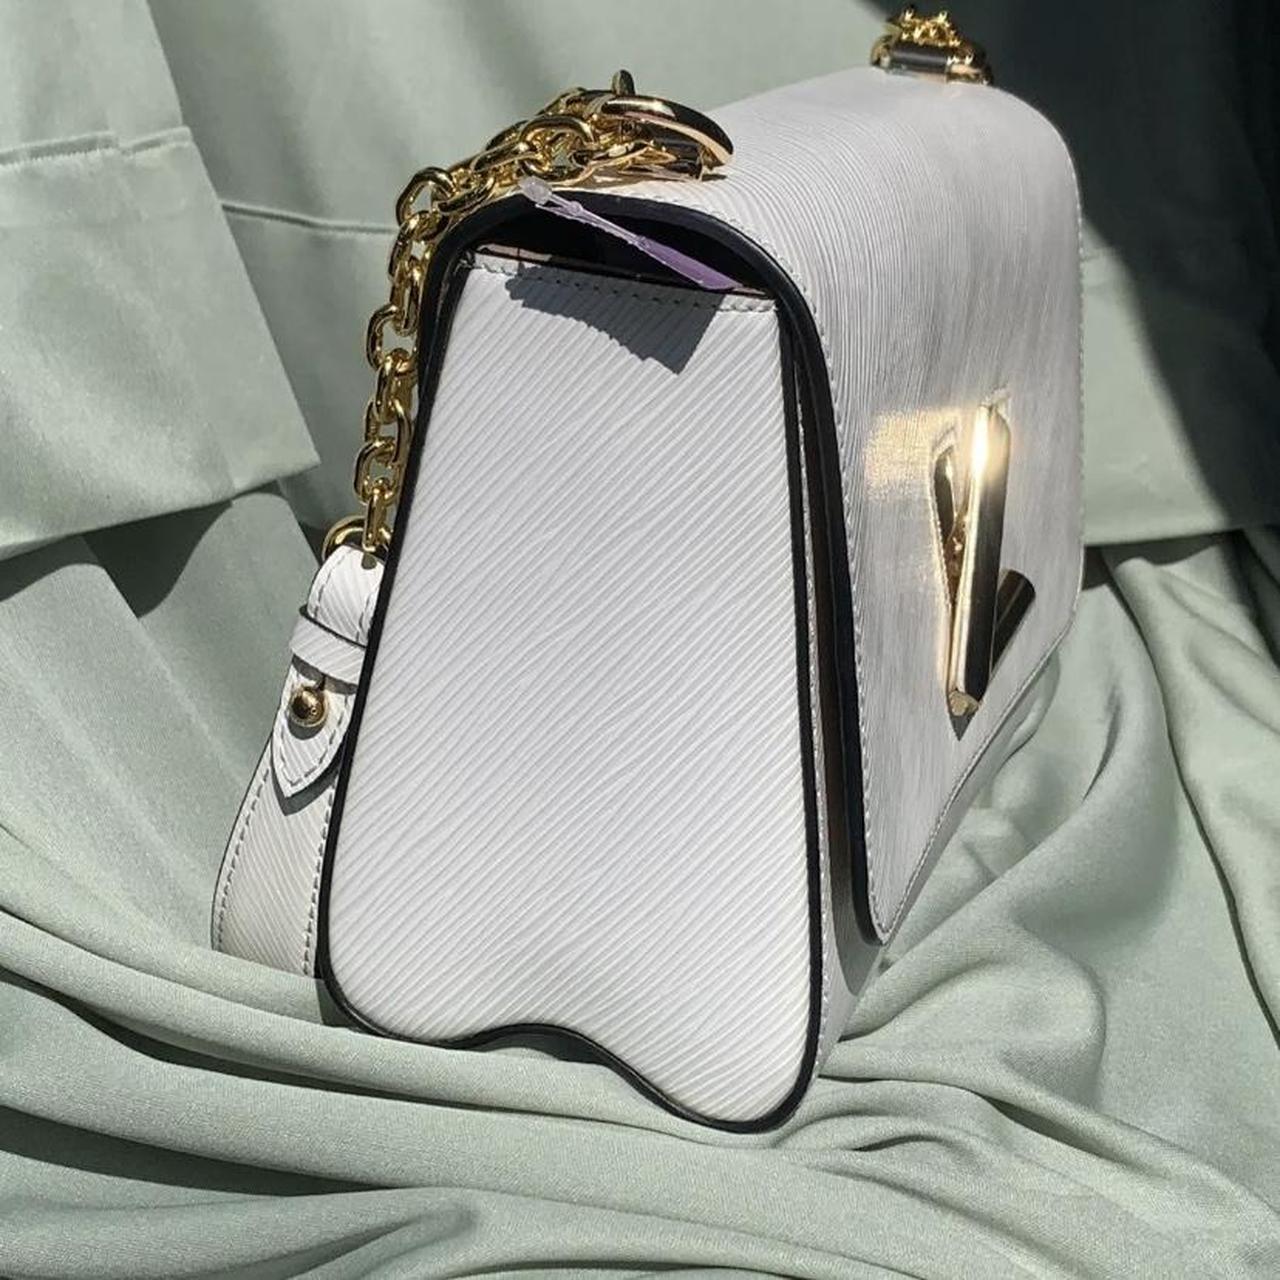 Louis Vuitton bag twist pm Perfect condition - Depop